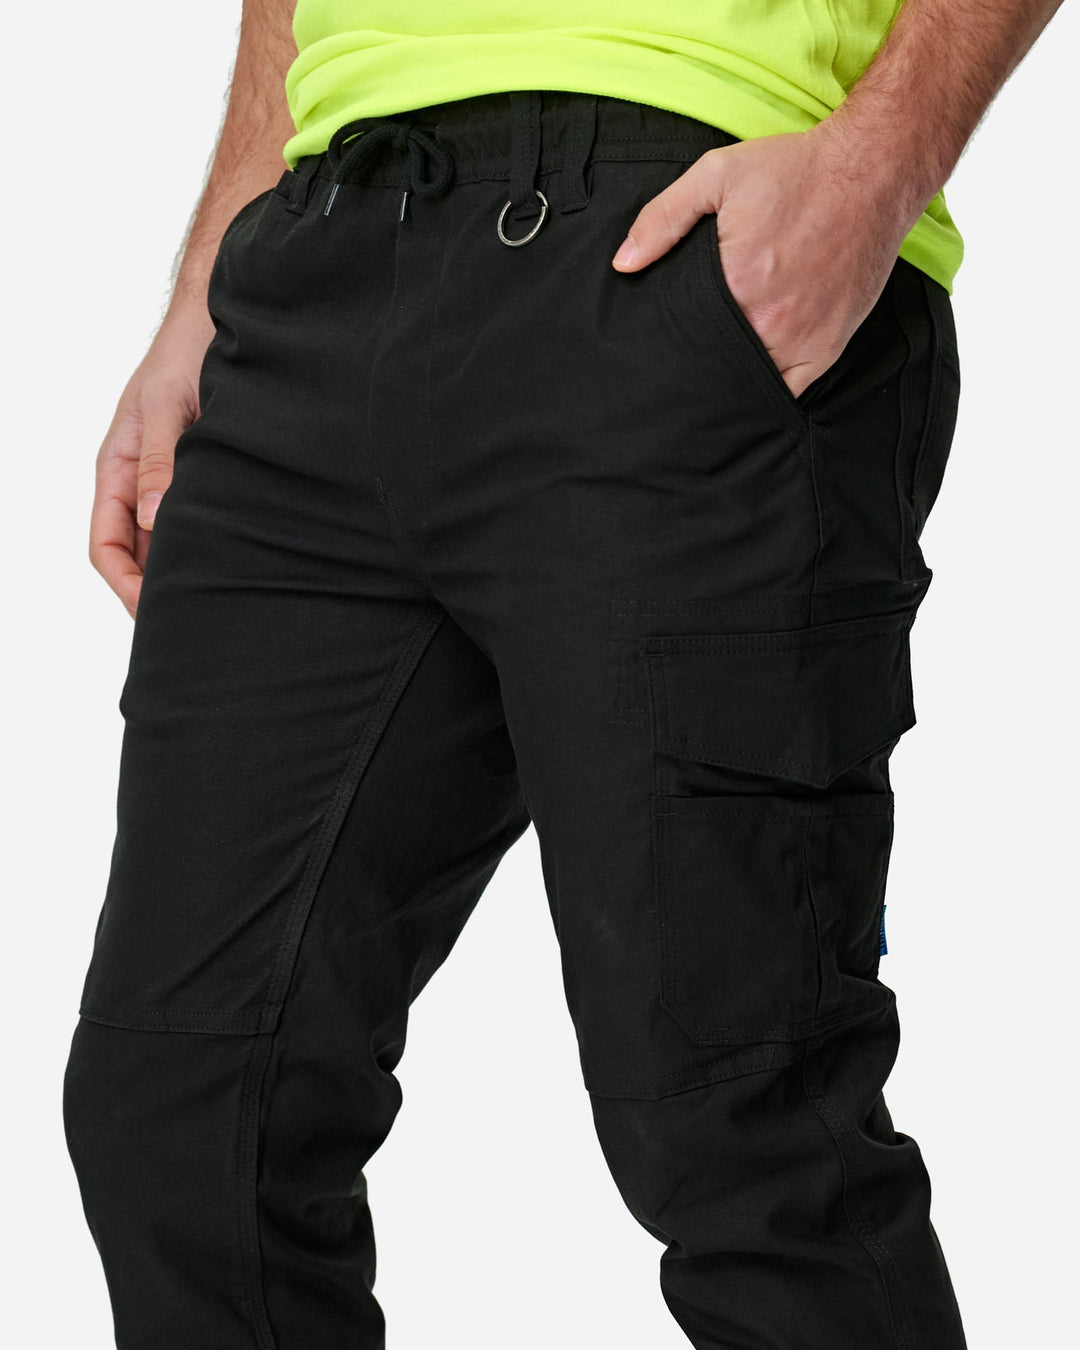 Elwood Men's Cuffed Pants, Workwear Pants